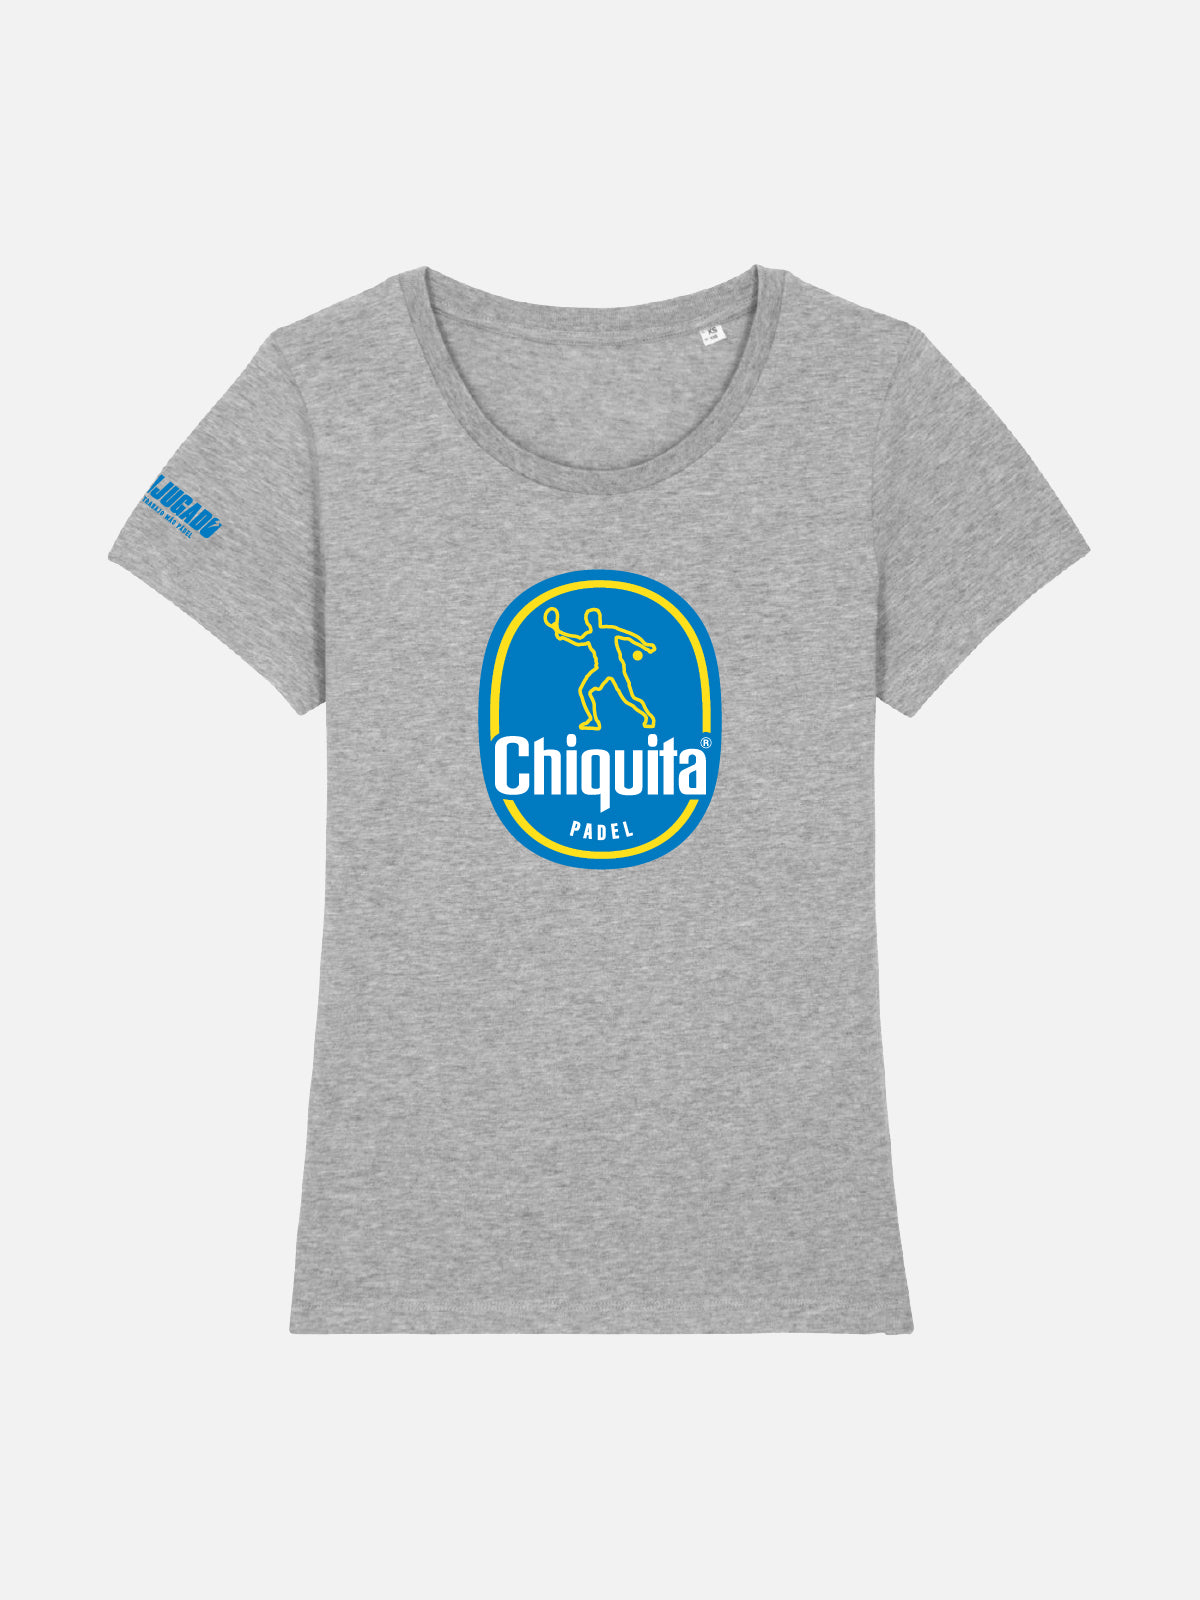 Women's Fun T-Shirt - Chiquita Padel